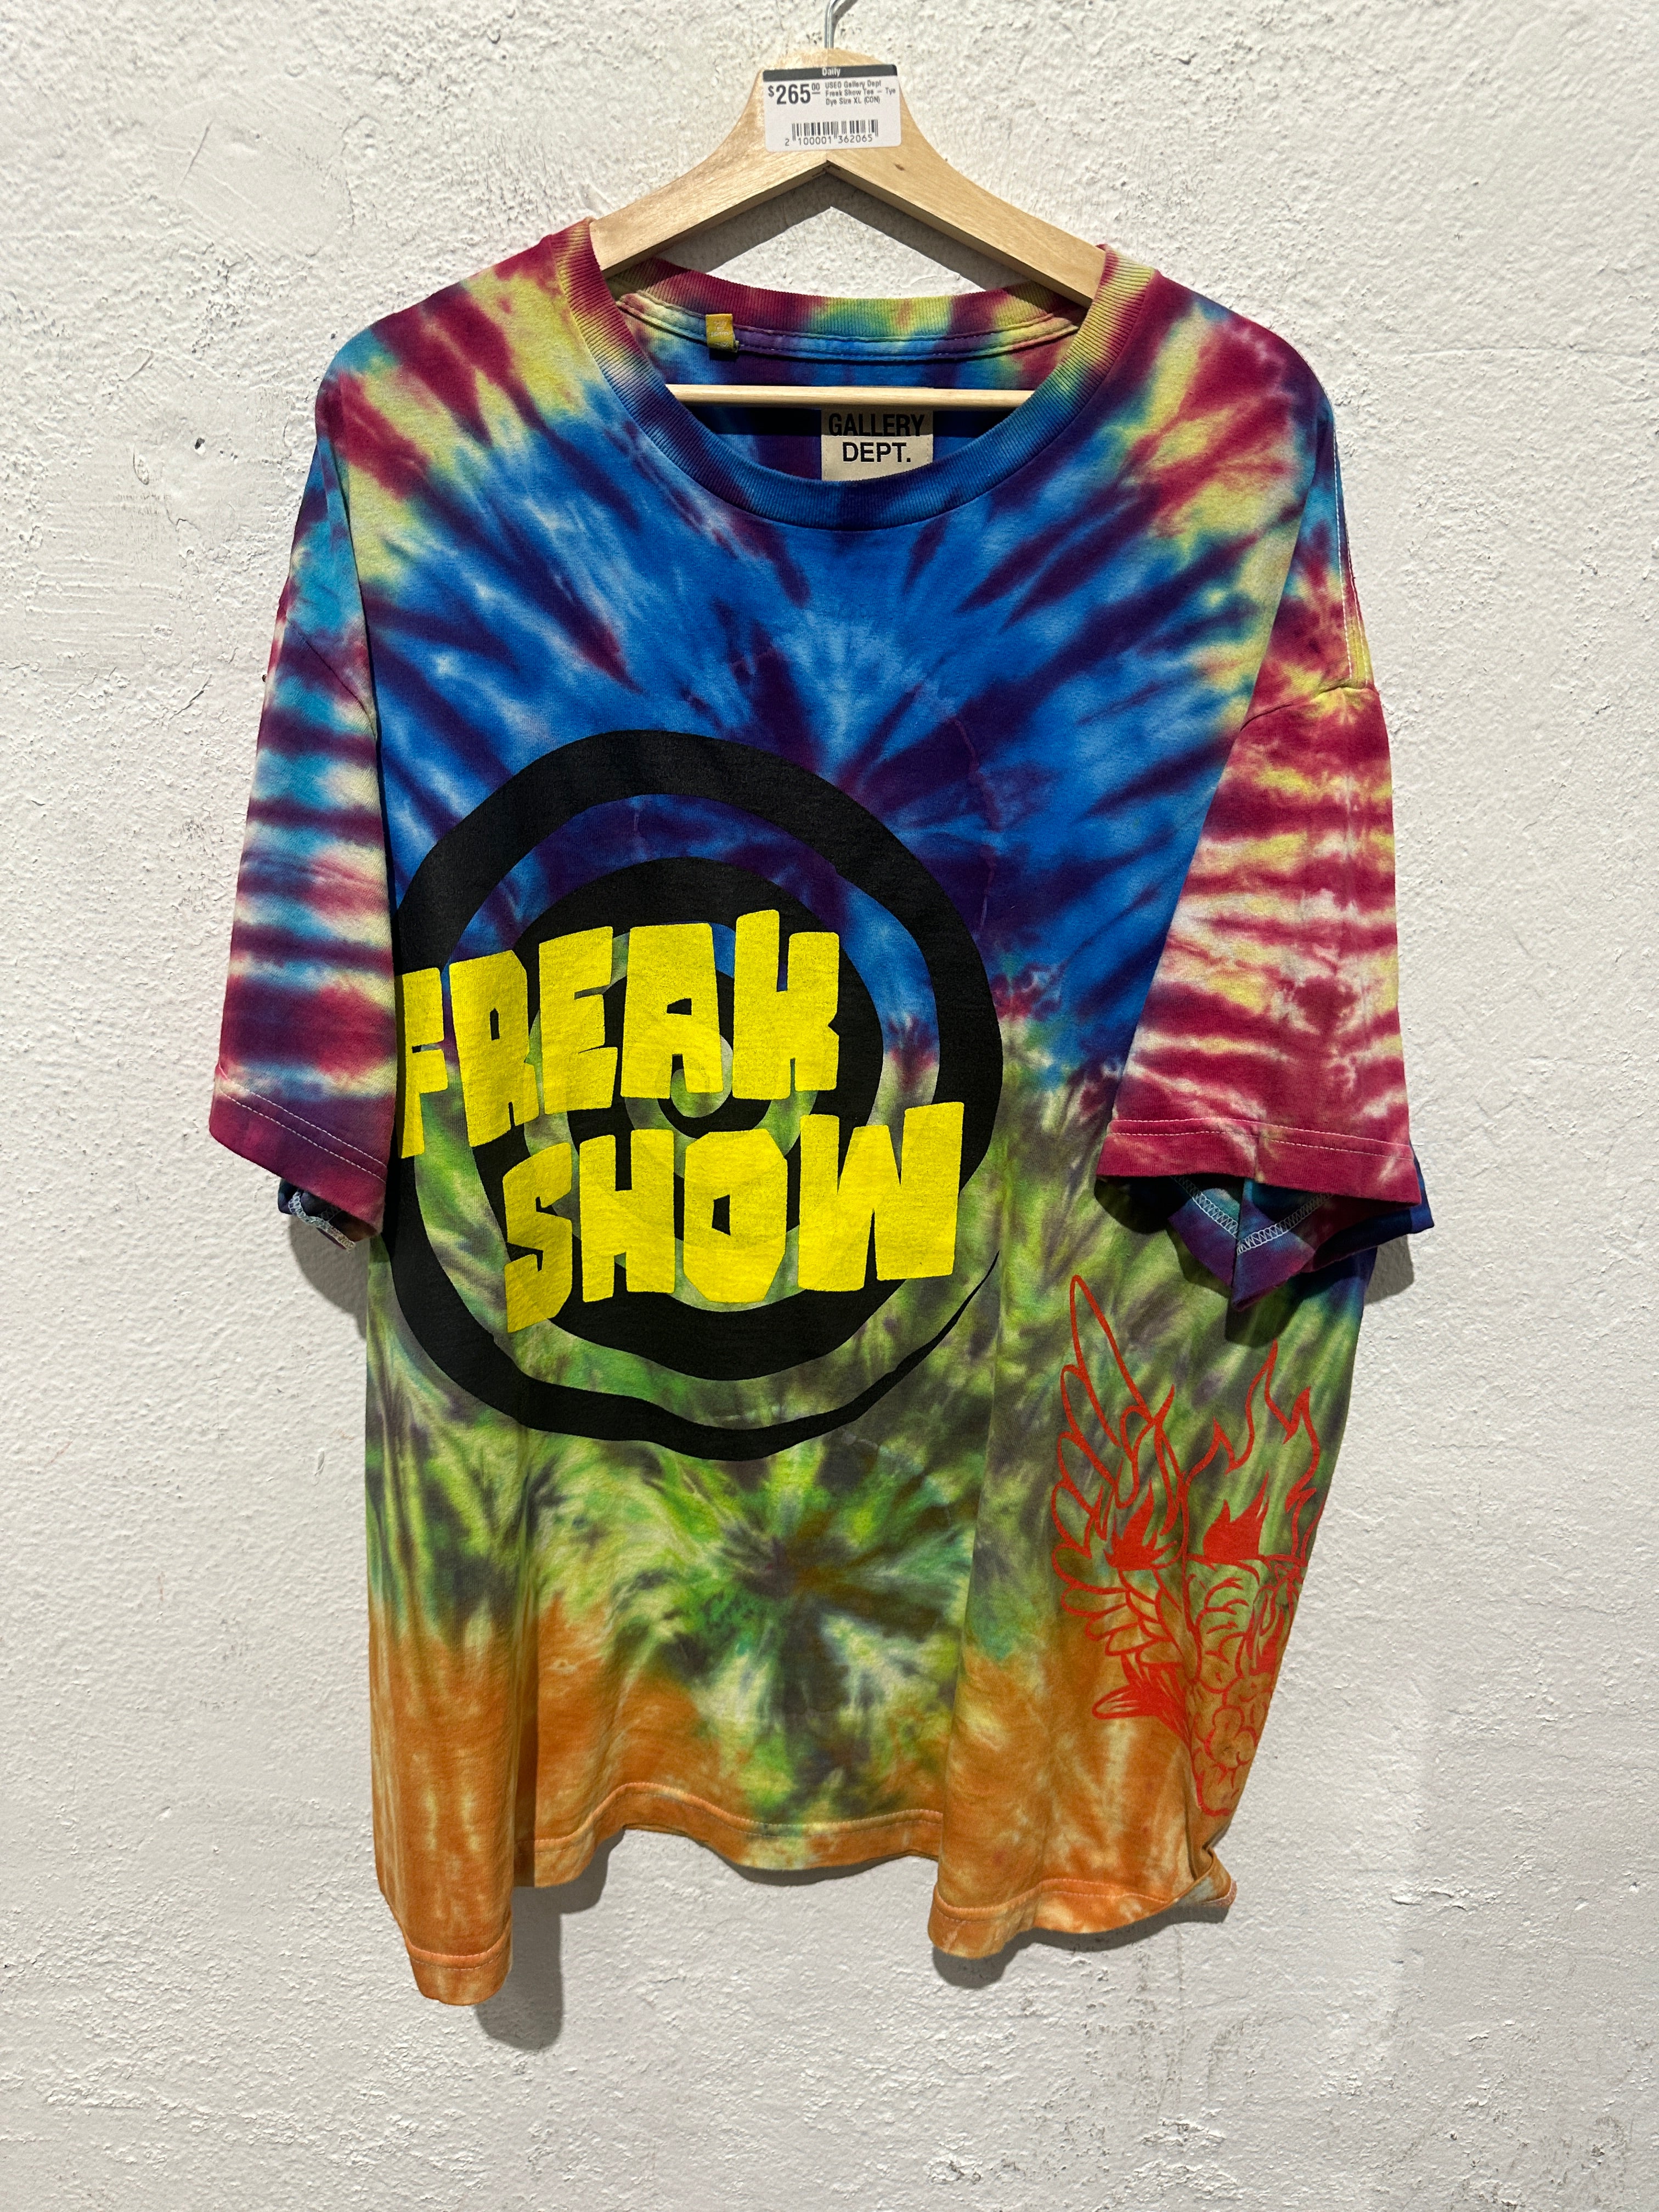 USED Gallery Dept Freak Show Tee - Tye Dye Size XL